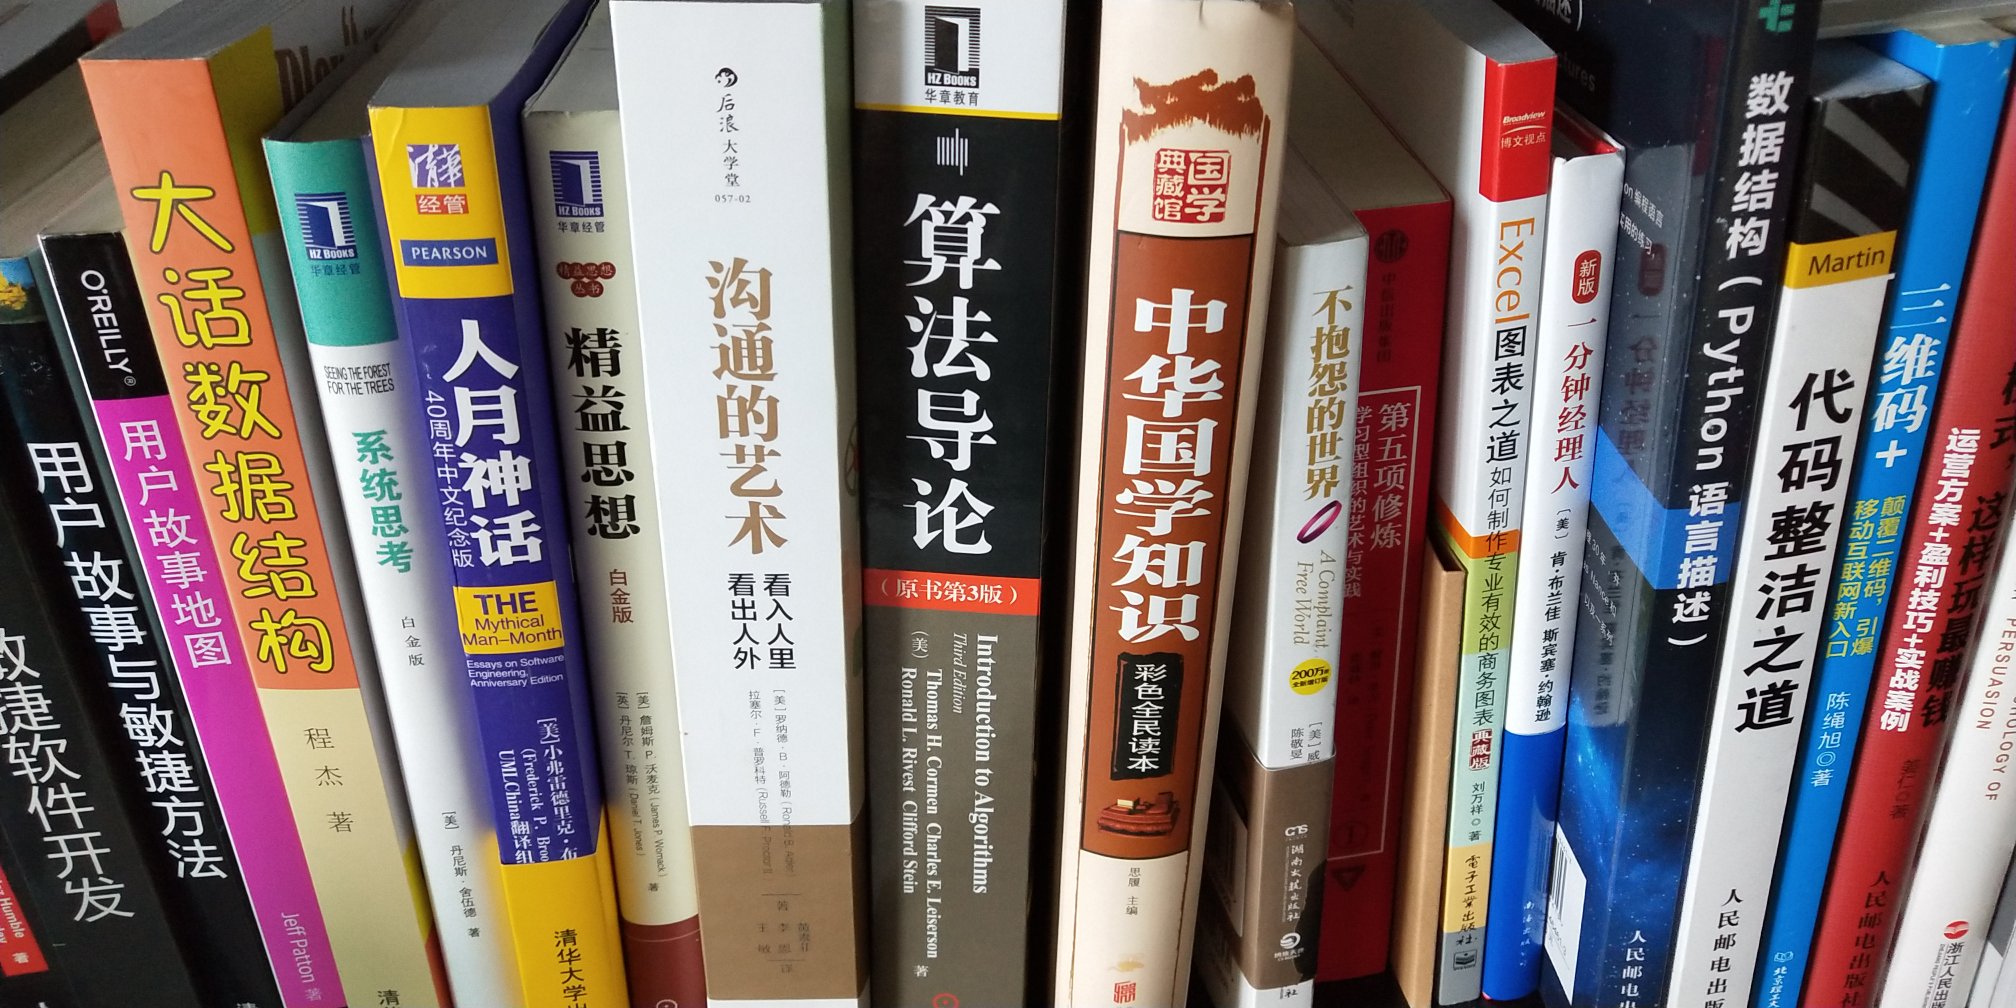 书是好书，只不过还没有看。读书使人进步，为了全中国的进步，图书的价格应该普遍调低。